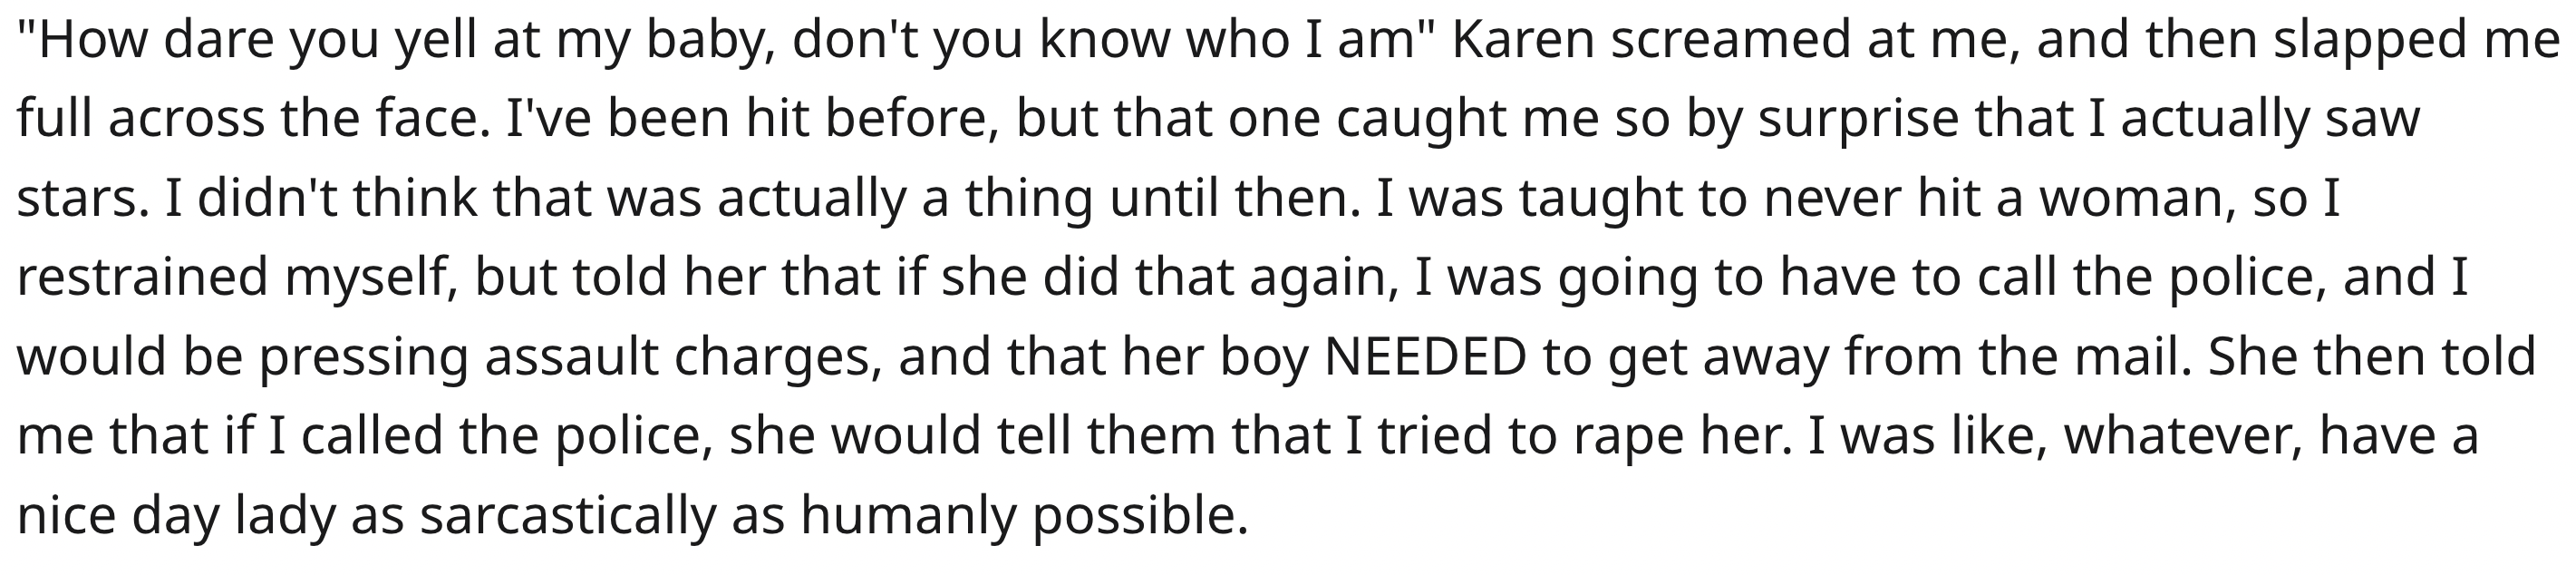 Mail Man Sends Karen to Prison Story Reddit